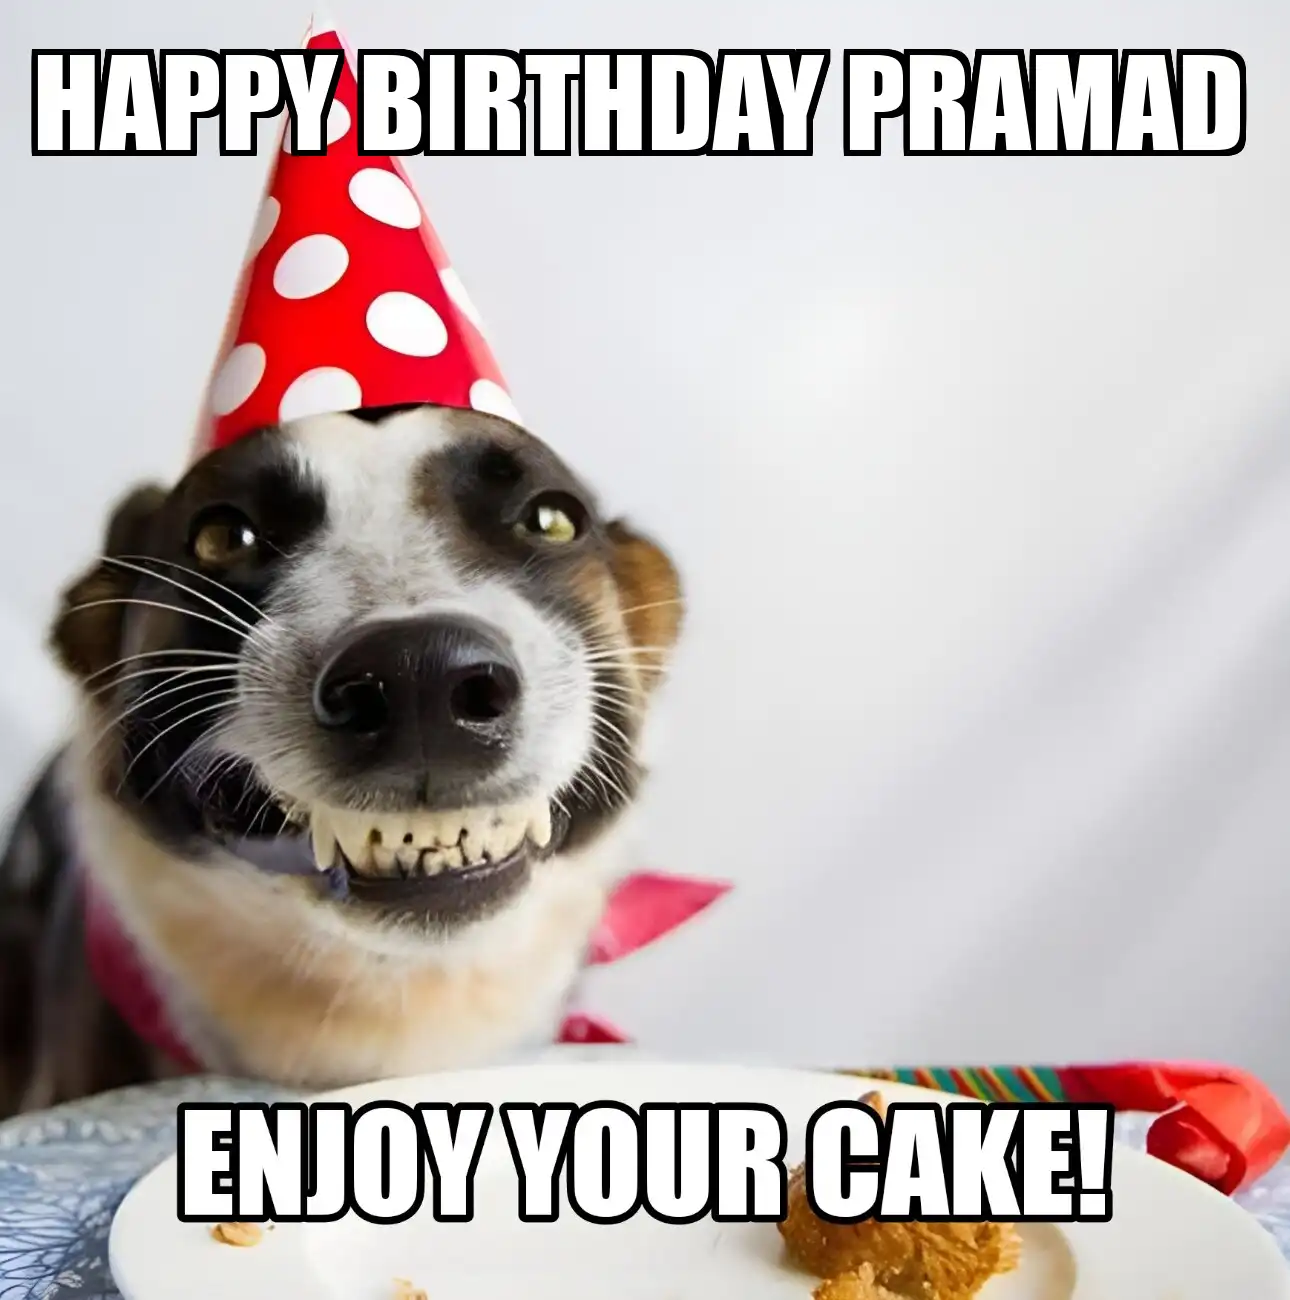 Happy Birthday Pramad Enjoy Your Cake Dog Meme